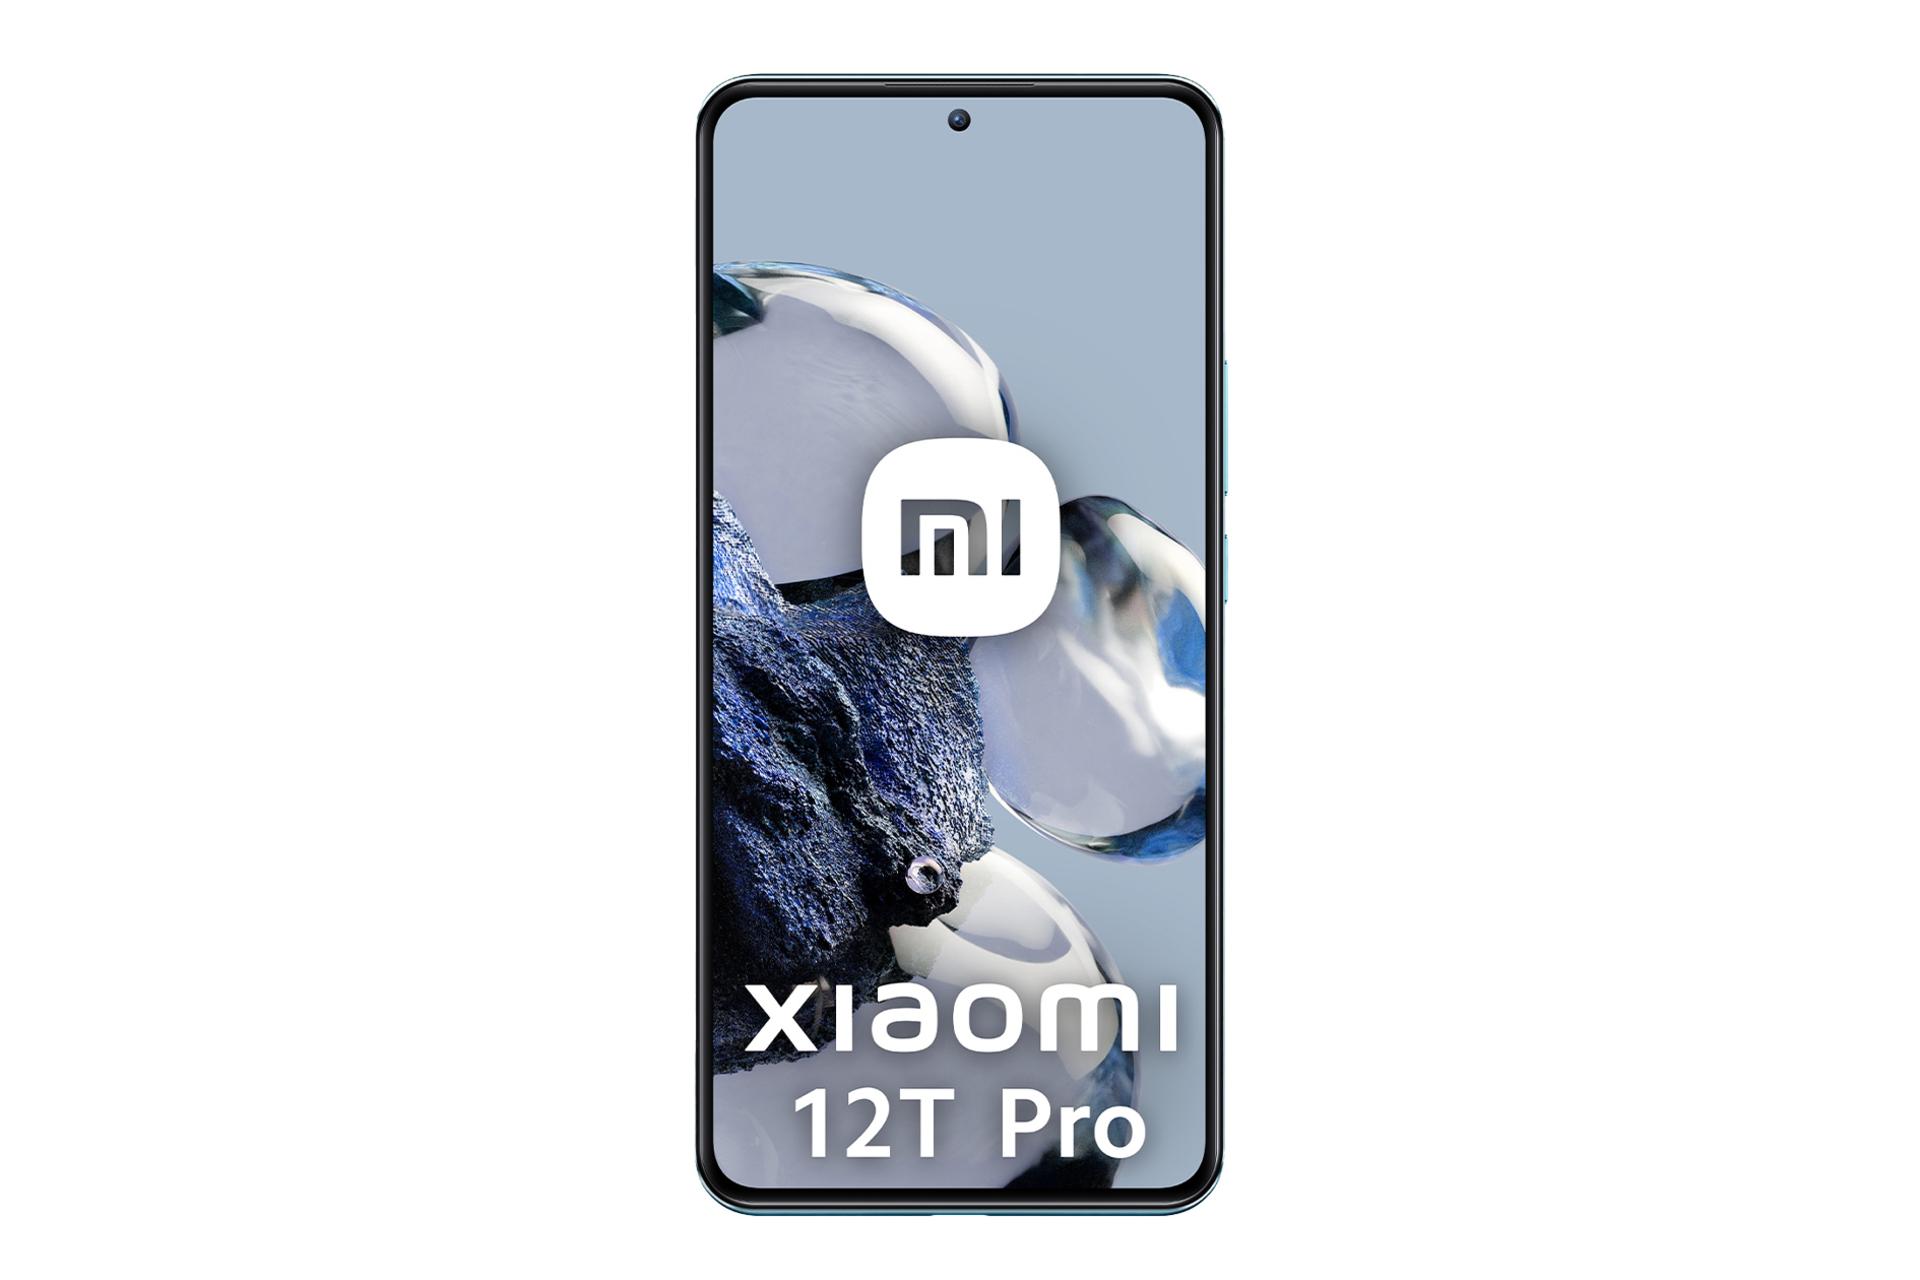 مرجع متخصصين ايران نماي جلوي موبايل موبايل شيائومي 12T پرو / Xiaomi 12T Pro با نمايشگر روشن و نمايش حاشيه هاي صفحه نمايش